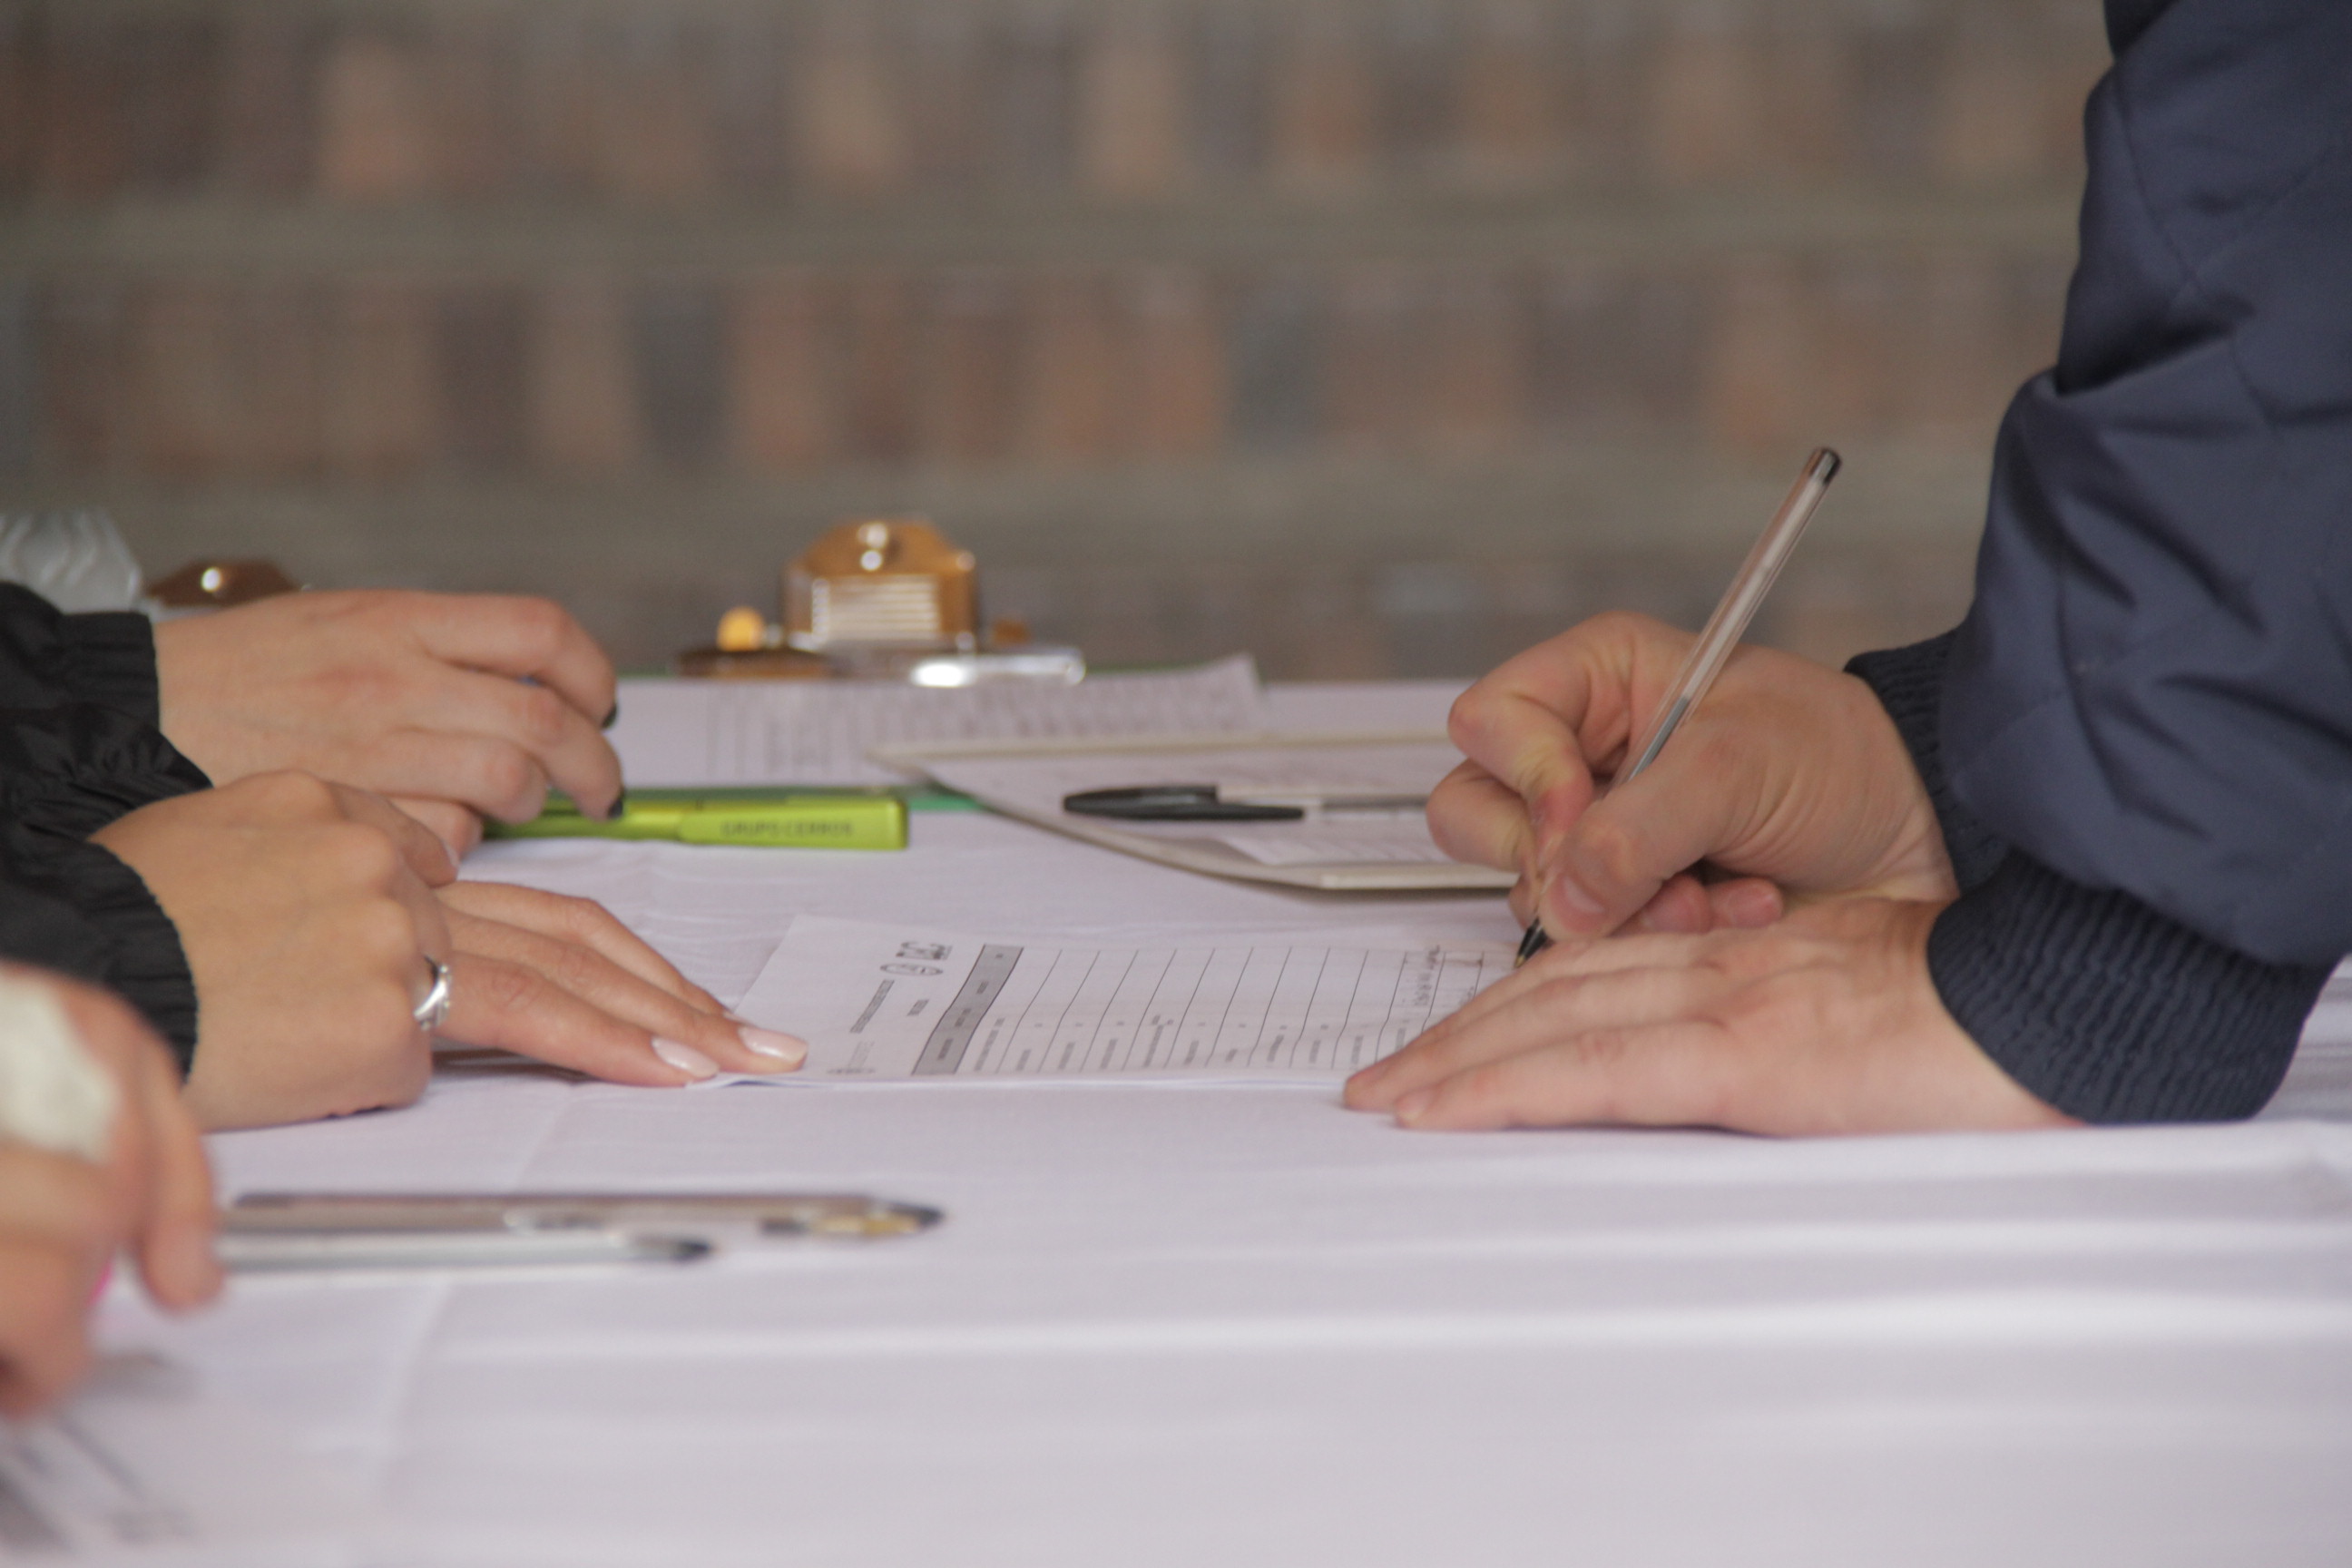 Imagen de manos sobre una mesa, y alguien escribiendo en un papel.